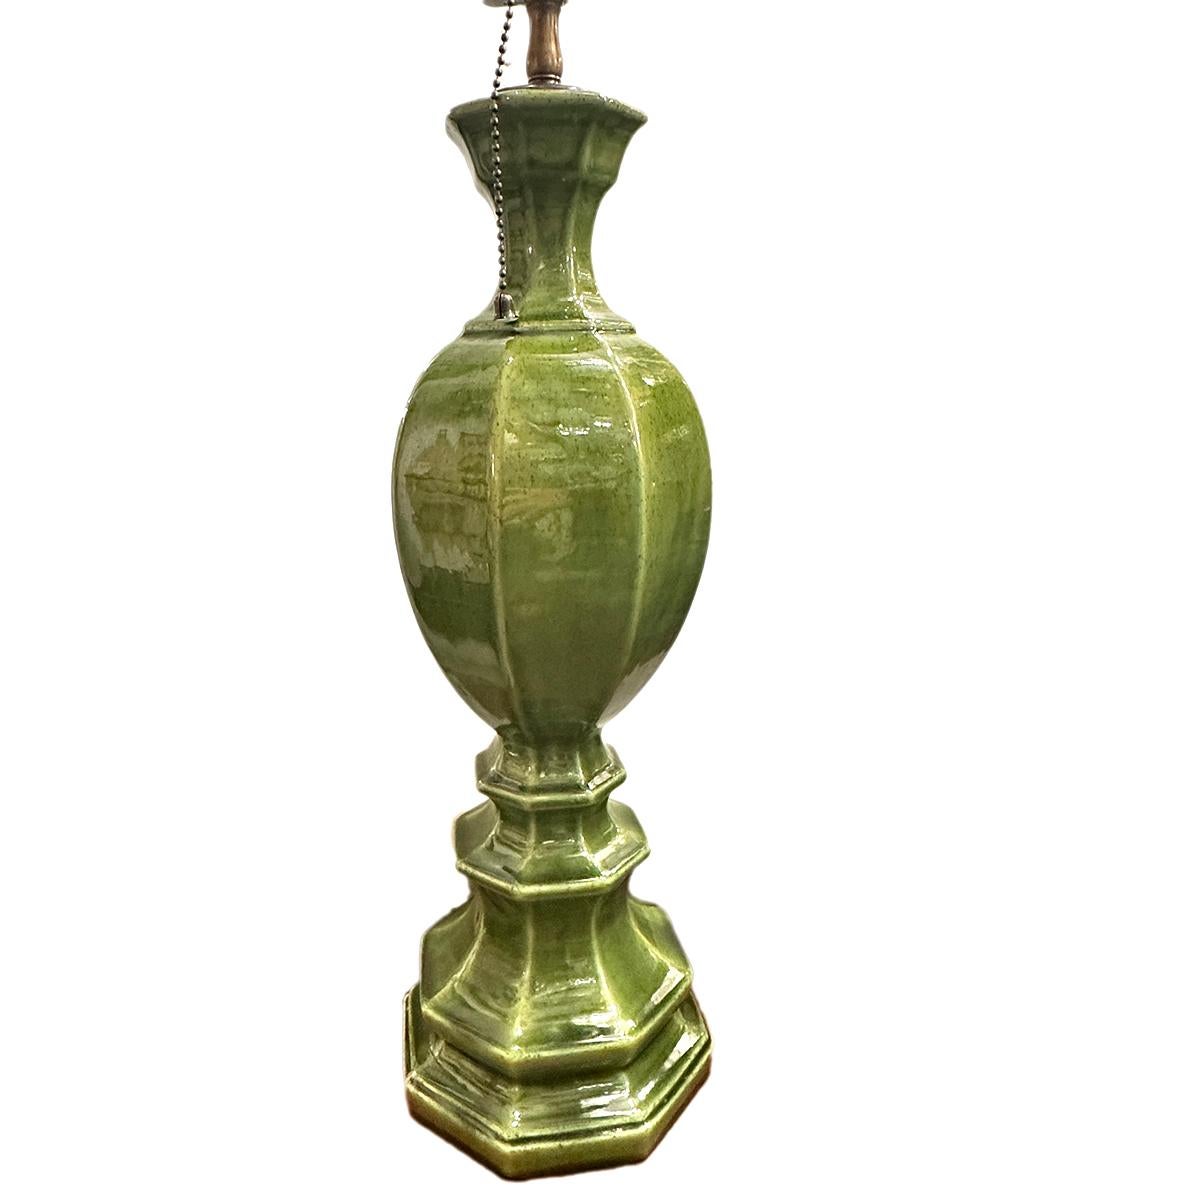 Lampe italienne en porcelaine émaillée verte datant des années 1960.

Mesures :
Hauteur du corps : 18 ?
Hauteur du support d'abat-jour : 28 ? (réglable)
Diamètre : 6 ?